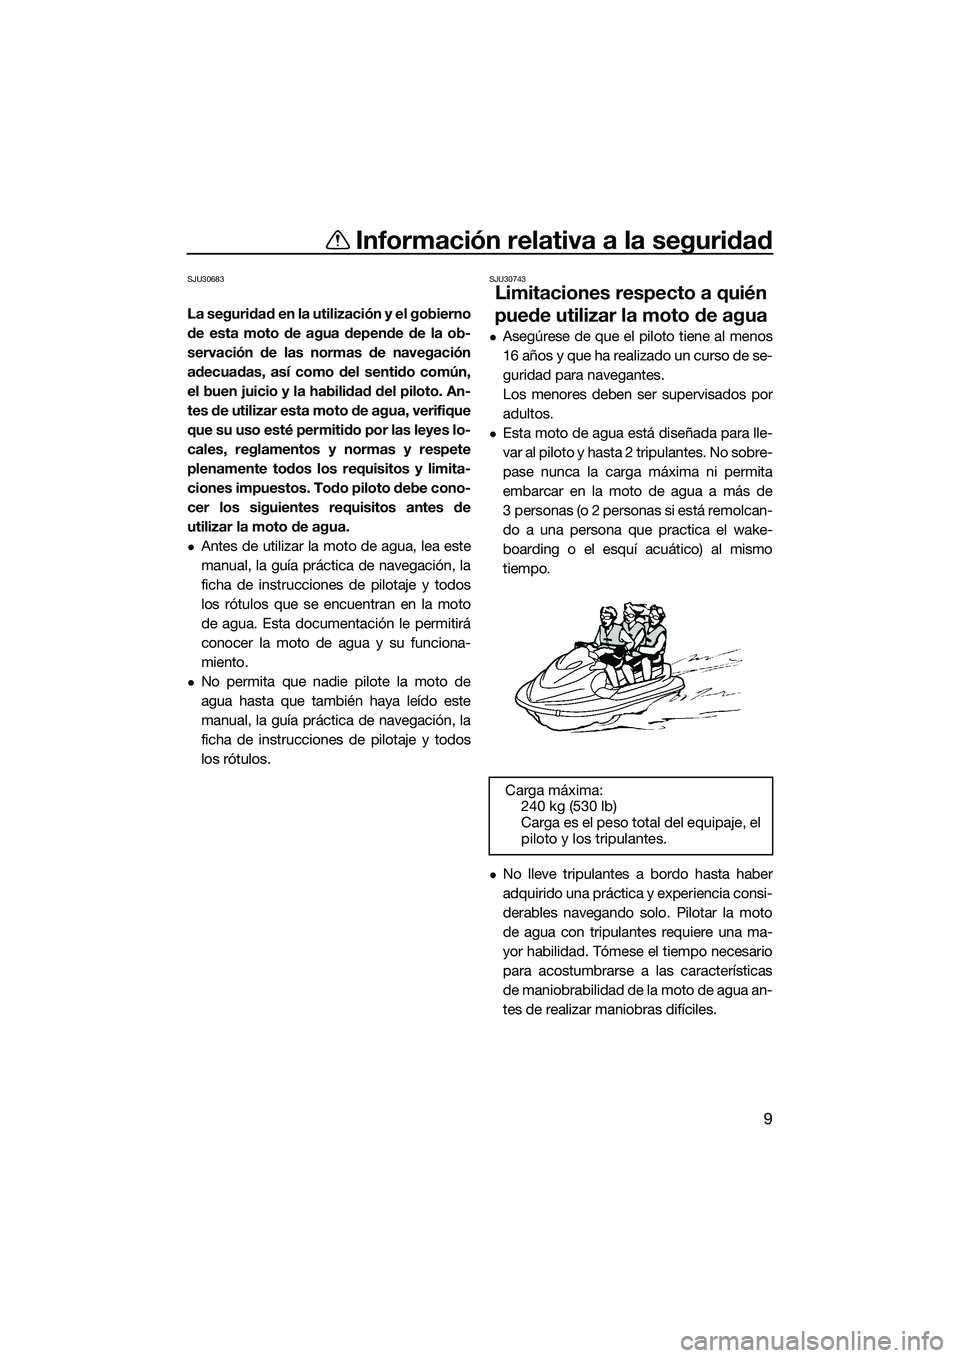 YAMAHA FX HO CRUISER 2022  Manuale de Empleo (in Spanish) Información relativa a la seguridad
9
SJU30683
La seguridad en la utilización y el gobierno
de esta moto de agua depende de la ob-
servación de las normas de navegación
adecuadas, así como del se